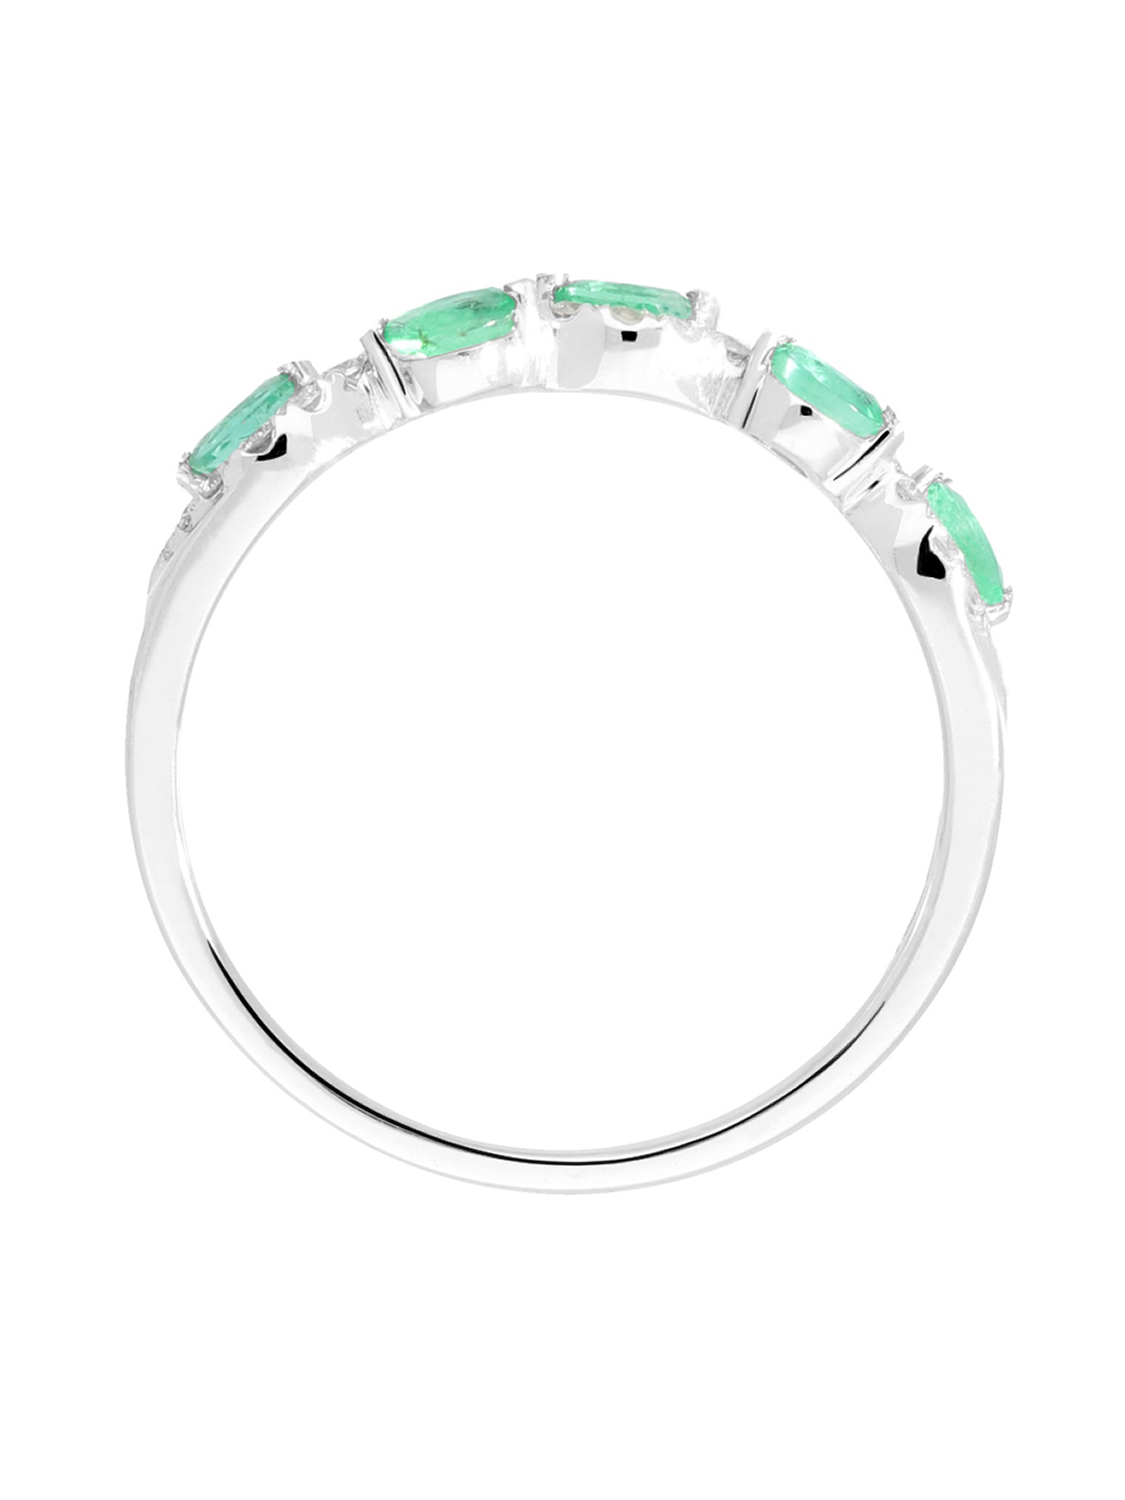 Castania - Diamant Smaragd Ring mit Edelstein 585 Weißgold - 0,17ct. - Größe 58